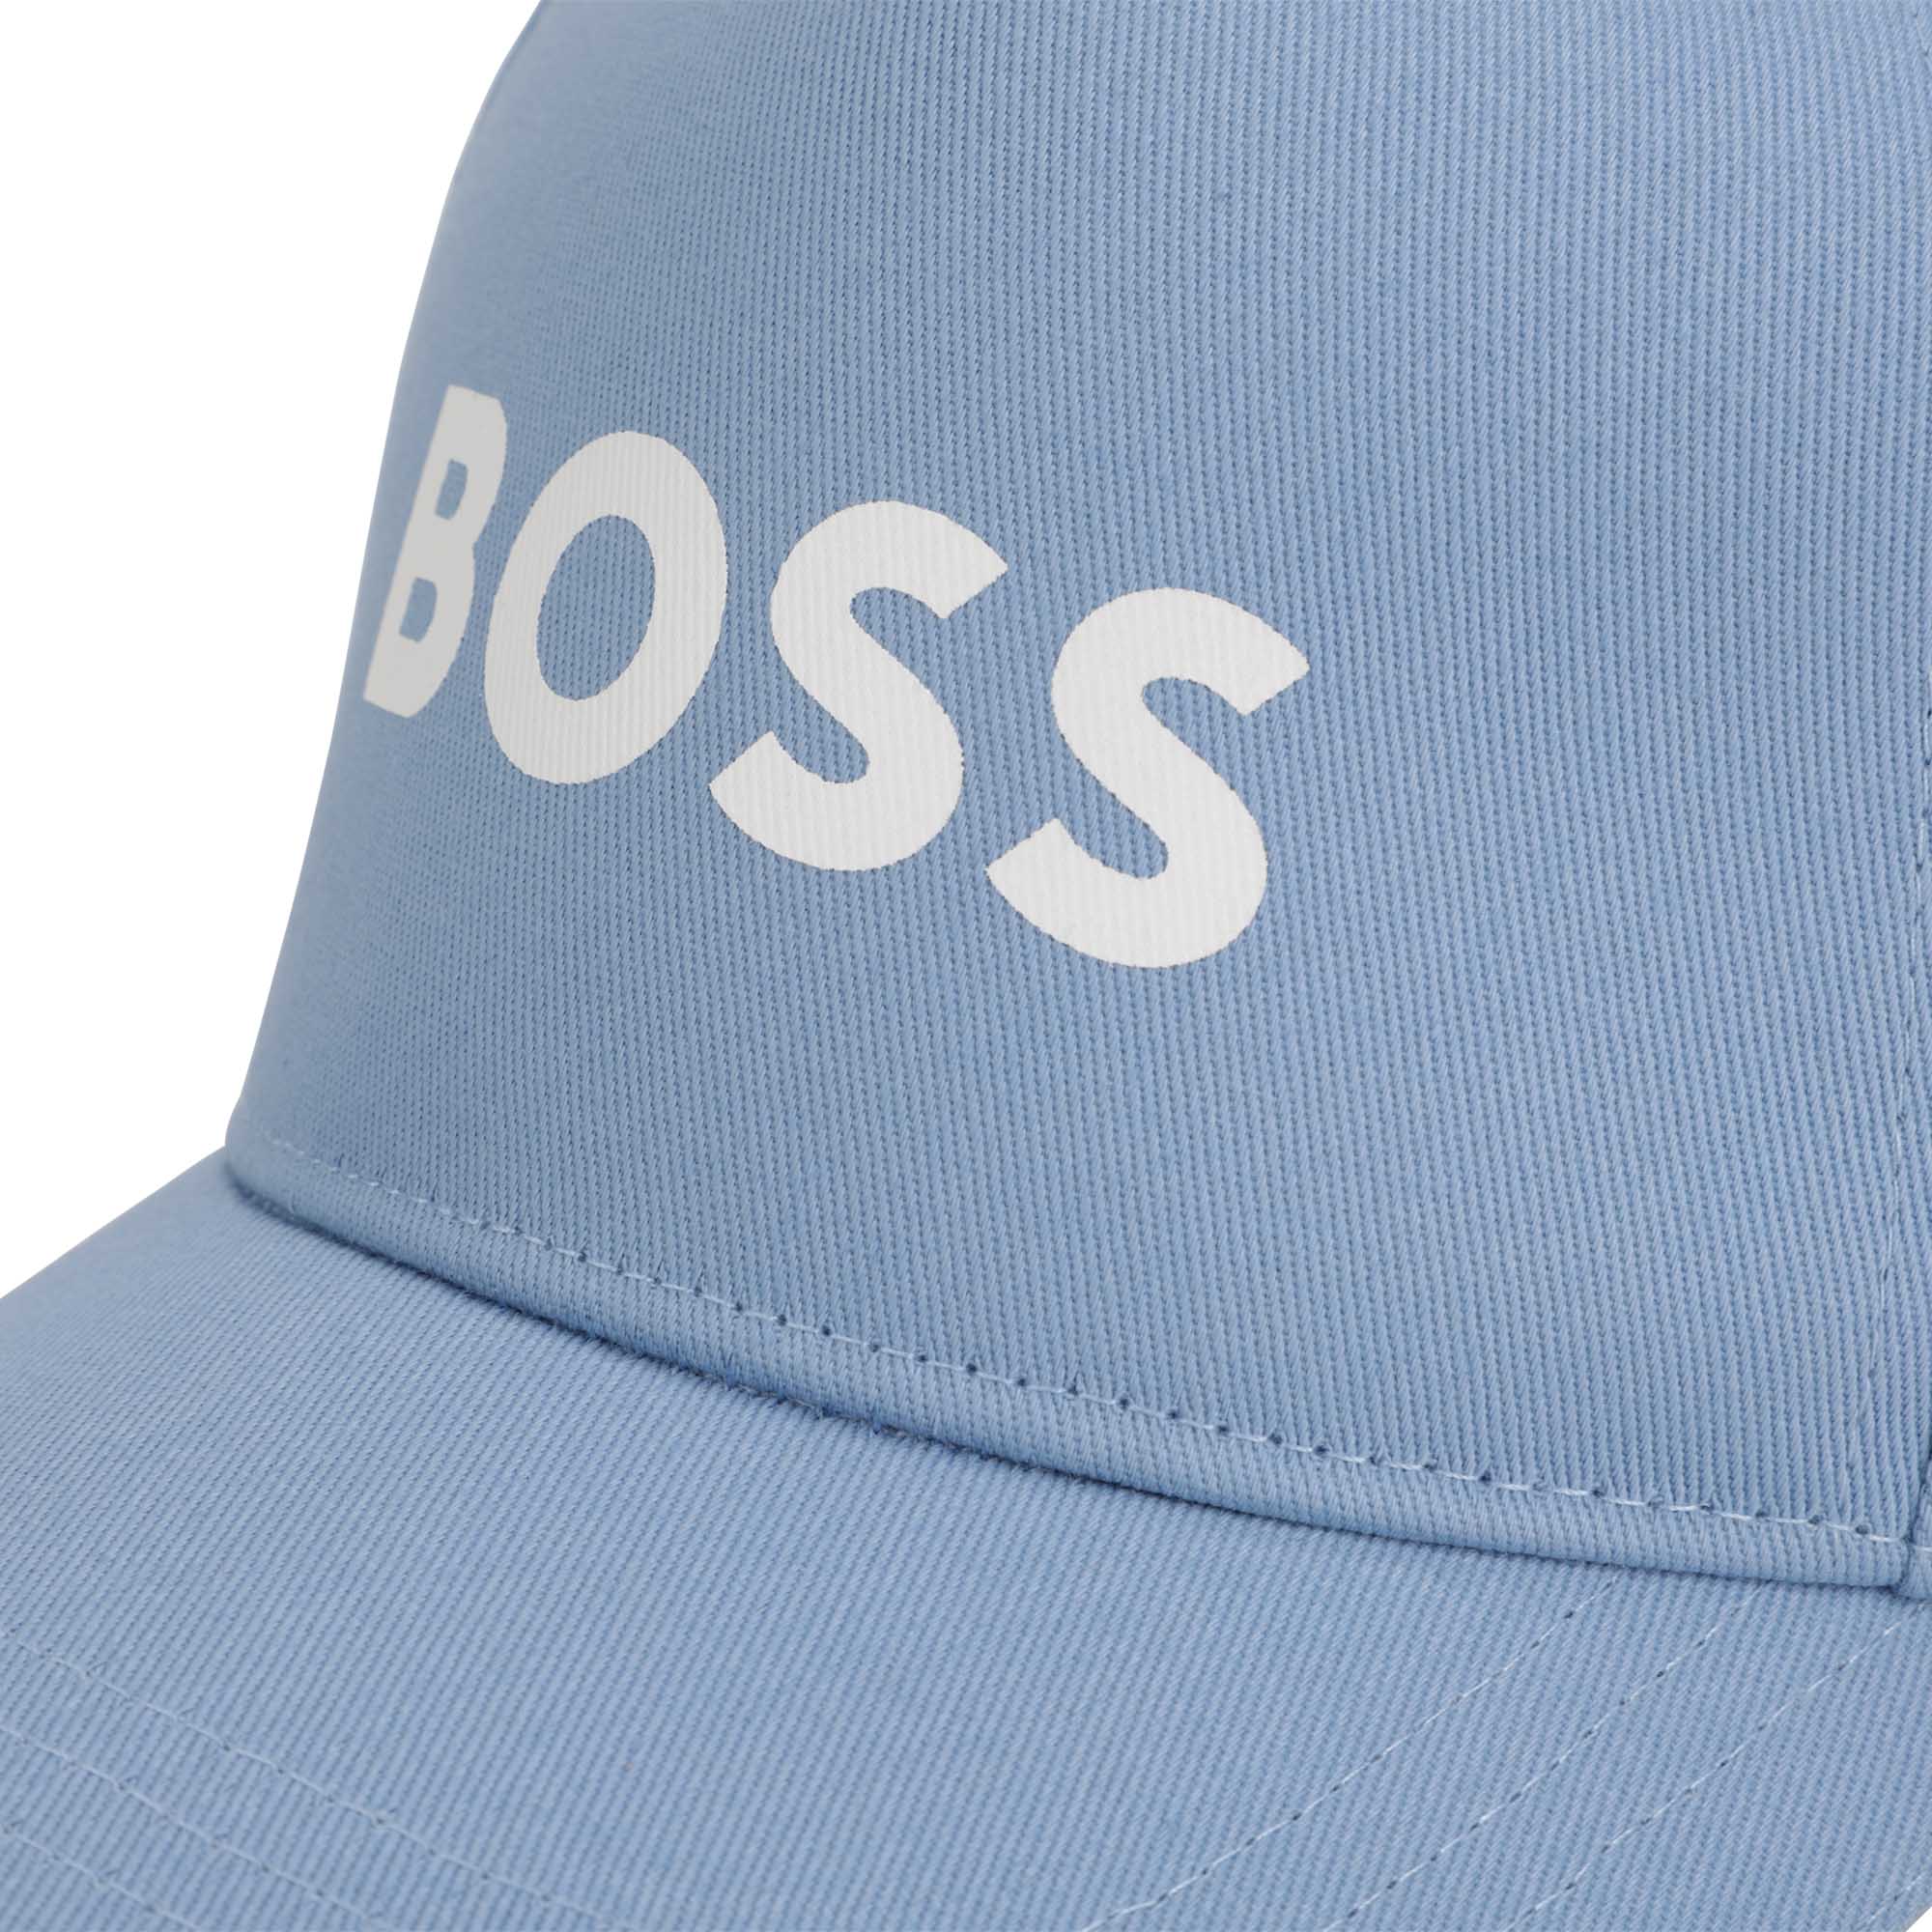 Boss boys blue cap close up